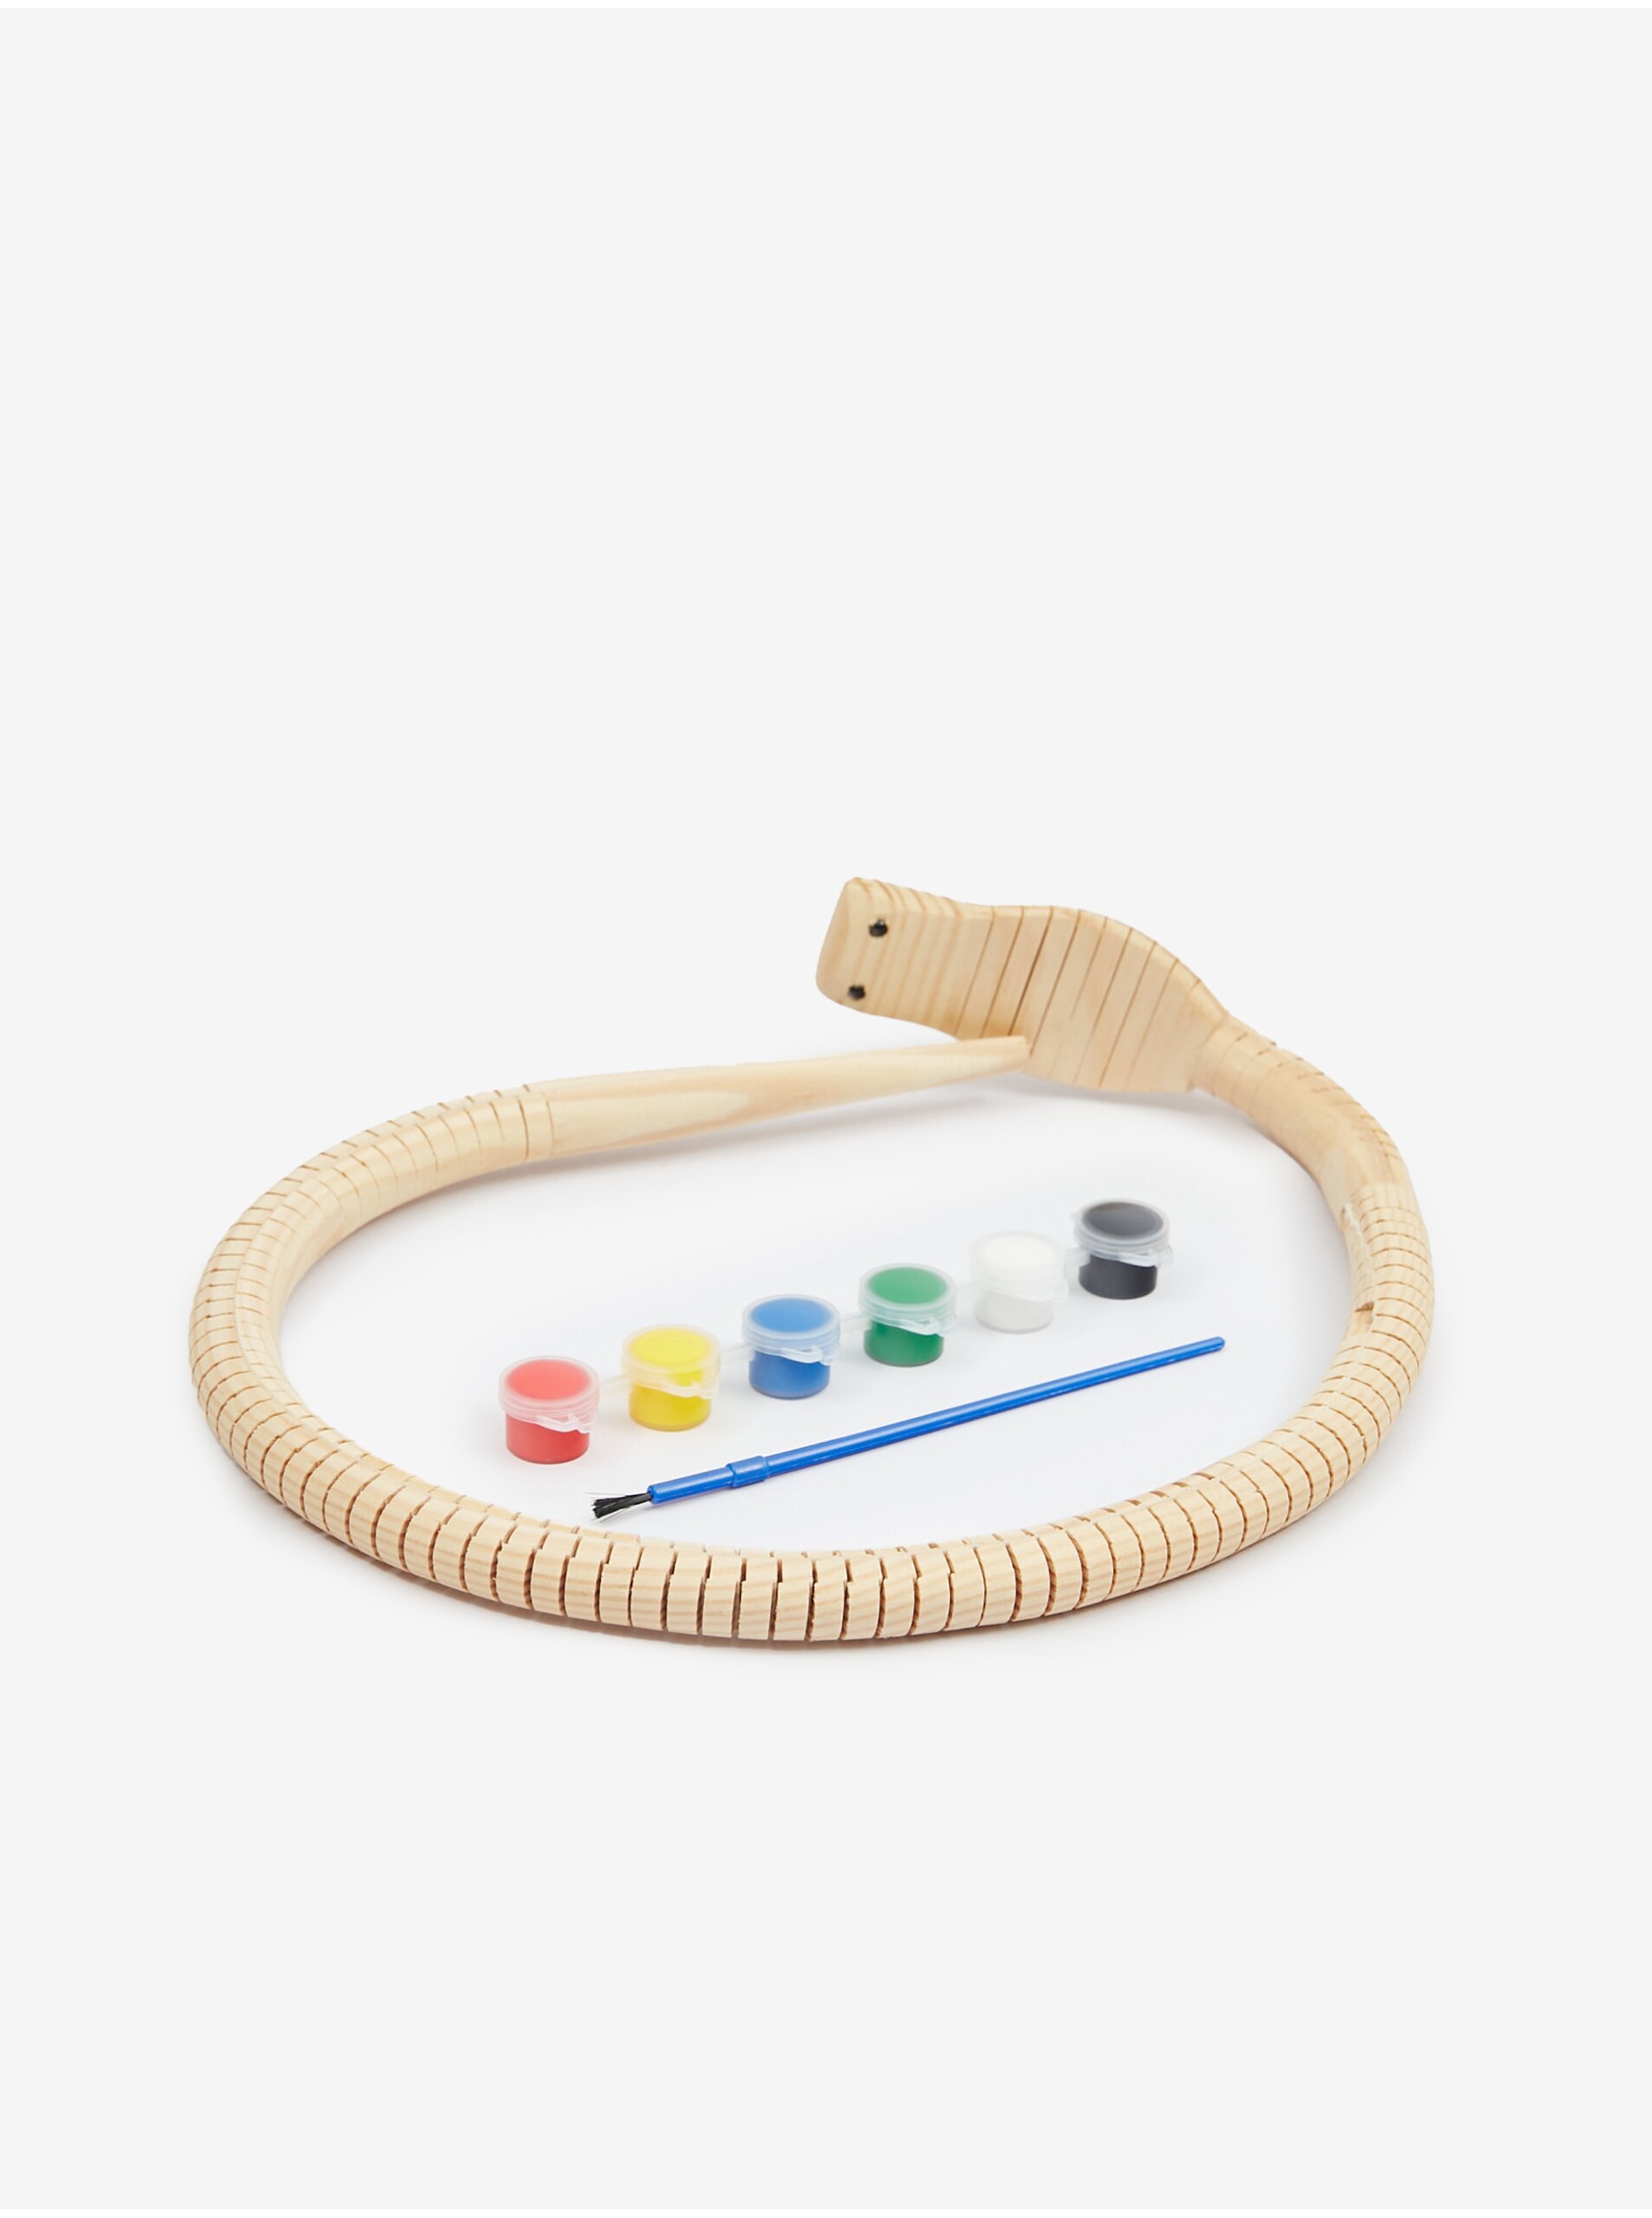 E-shop Dřevěná kreativní sada SIFCON Snake